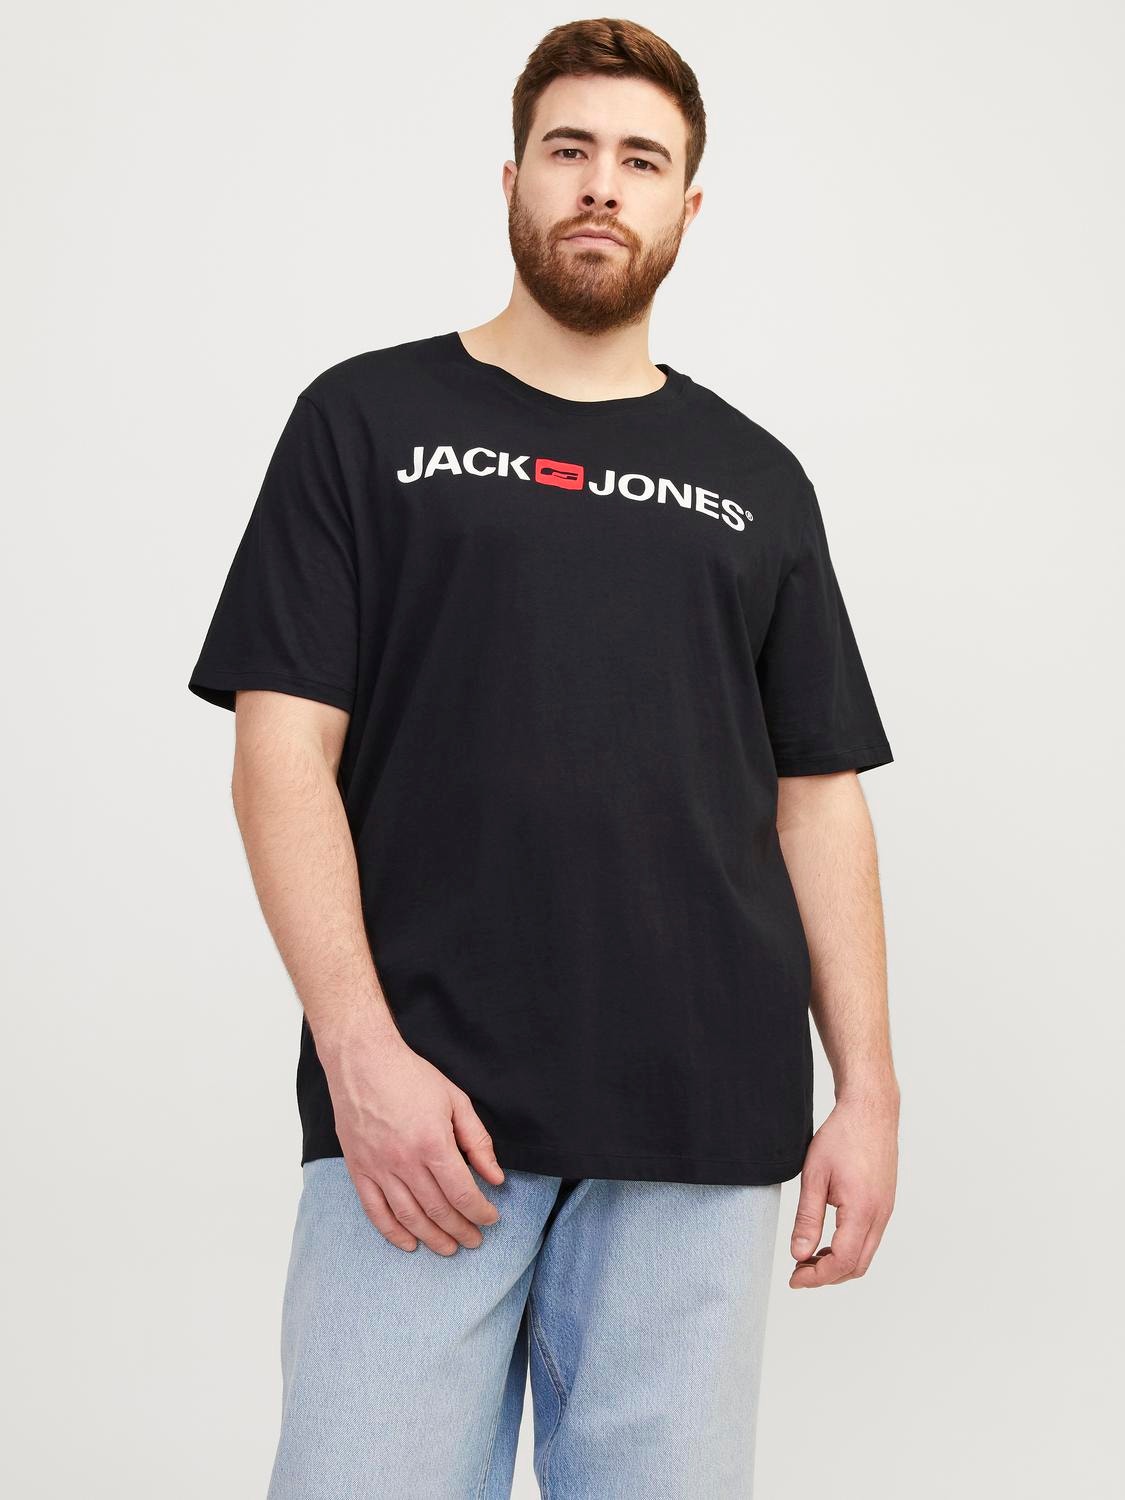 Jack & Jones Plus Size T-shirt Logo -Black - 12184987